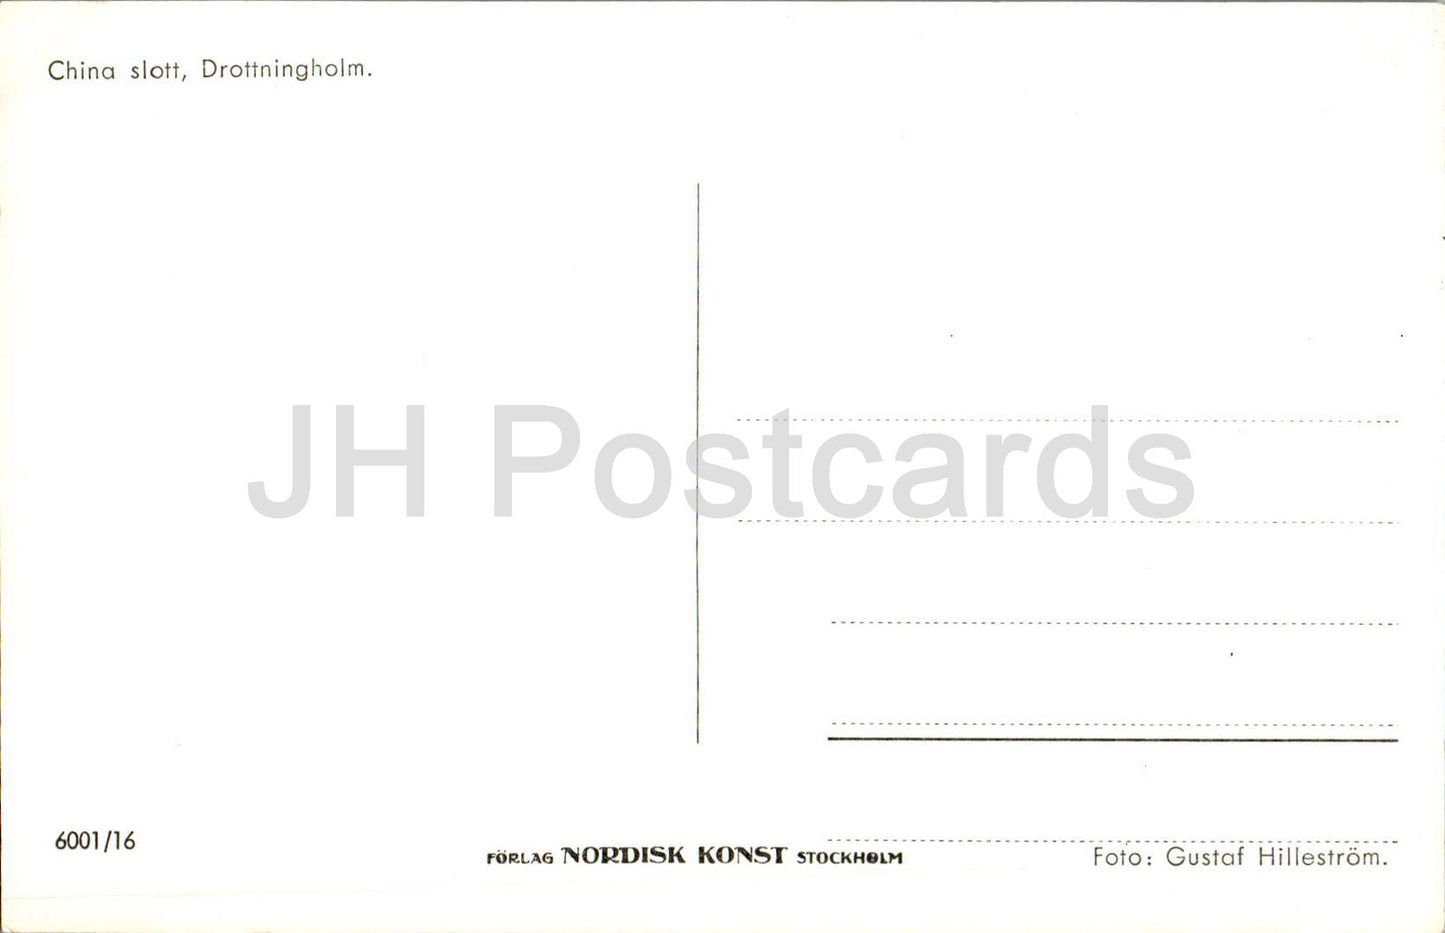 Drottningholm - Kina Slott - Chinesisches Schloss - 6001/16 - alte Postkarte - Schweden - unbenutzt 